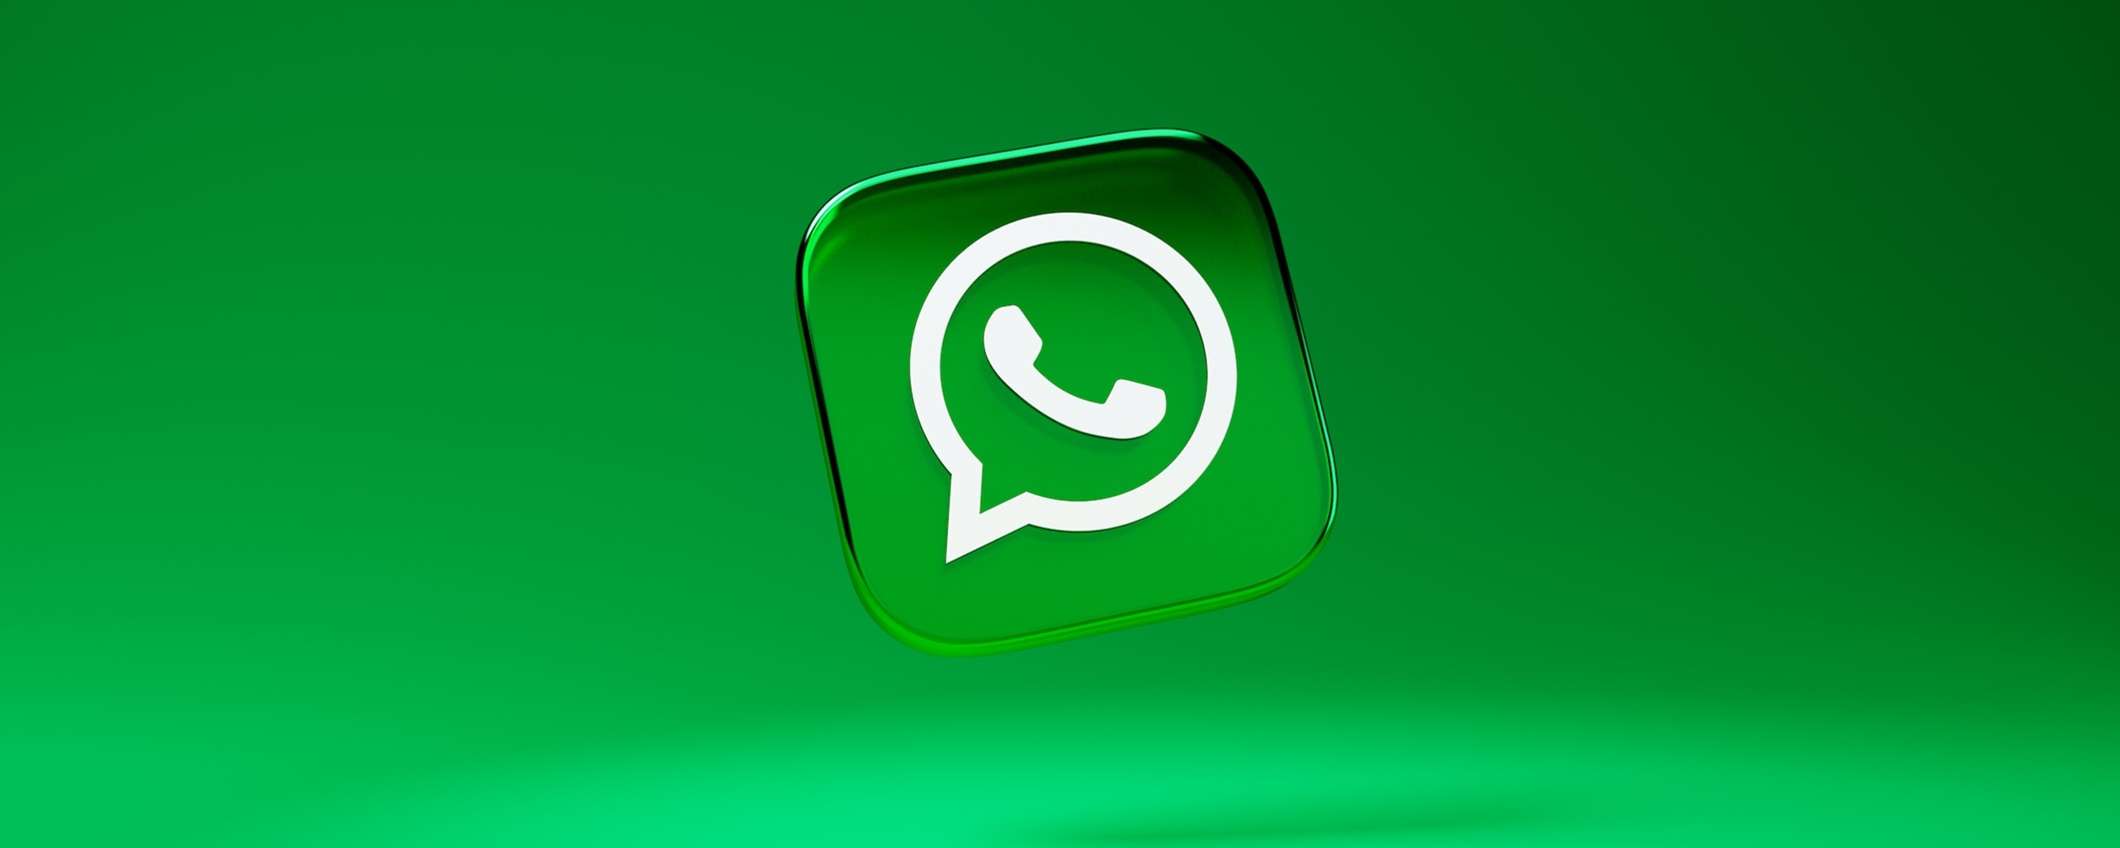 Come gestire lo spazio di archiviazione su WhatsApp